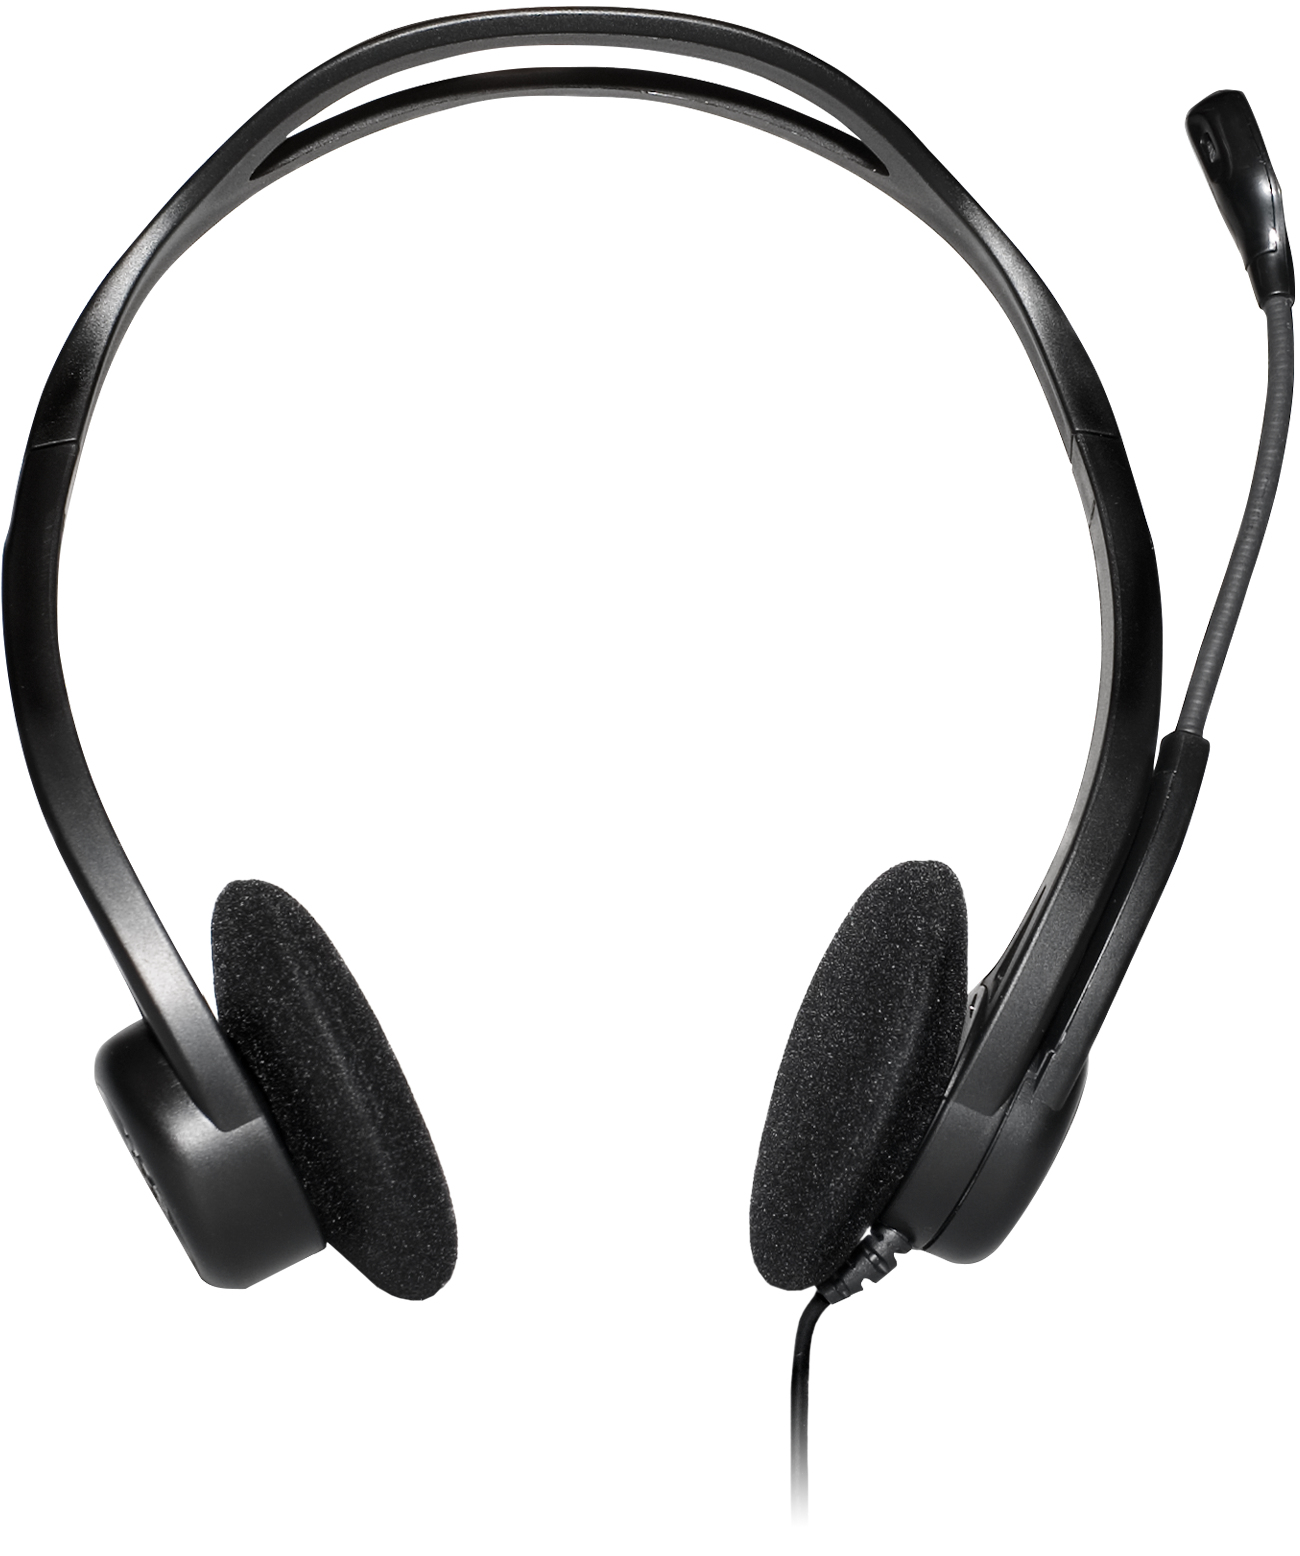 Logitech 960 - Headset - on-ear - wired - USB